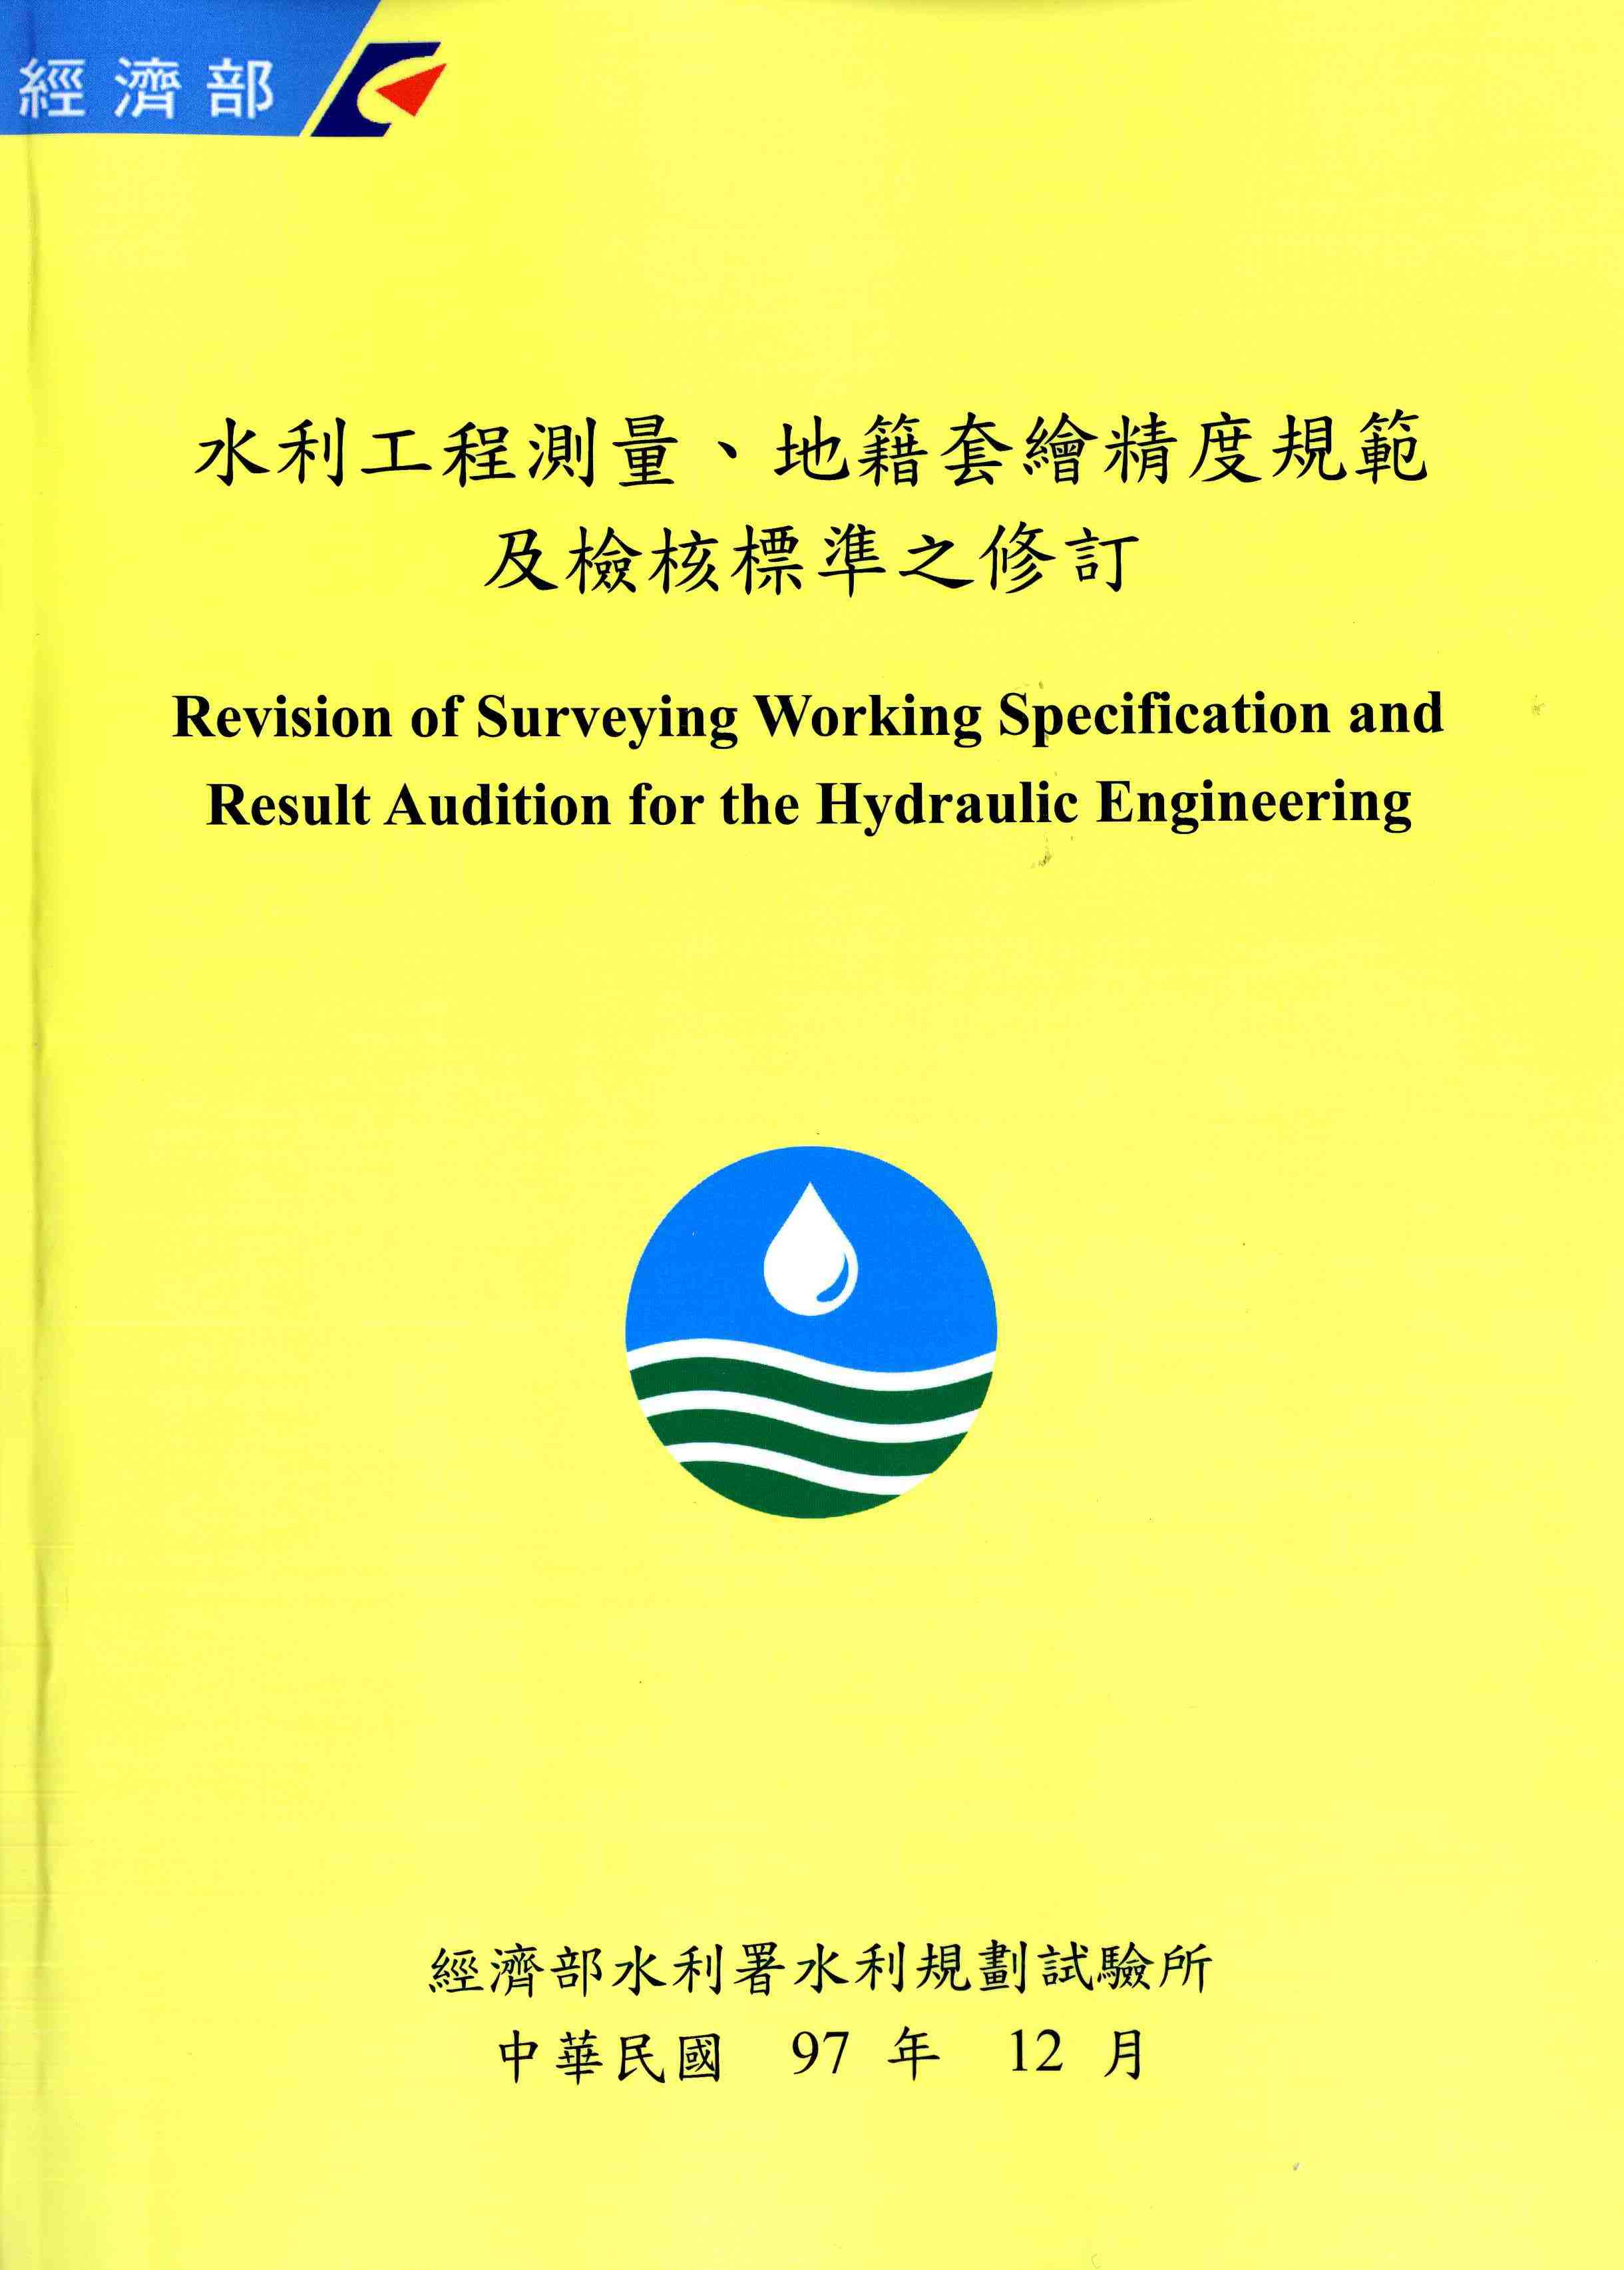 水利工程測量、地籍套繪精度規範及檢核標準之修訂